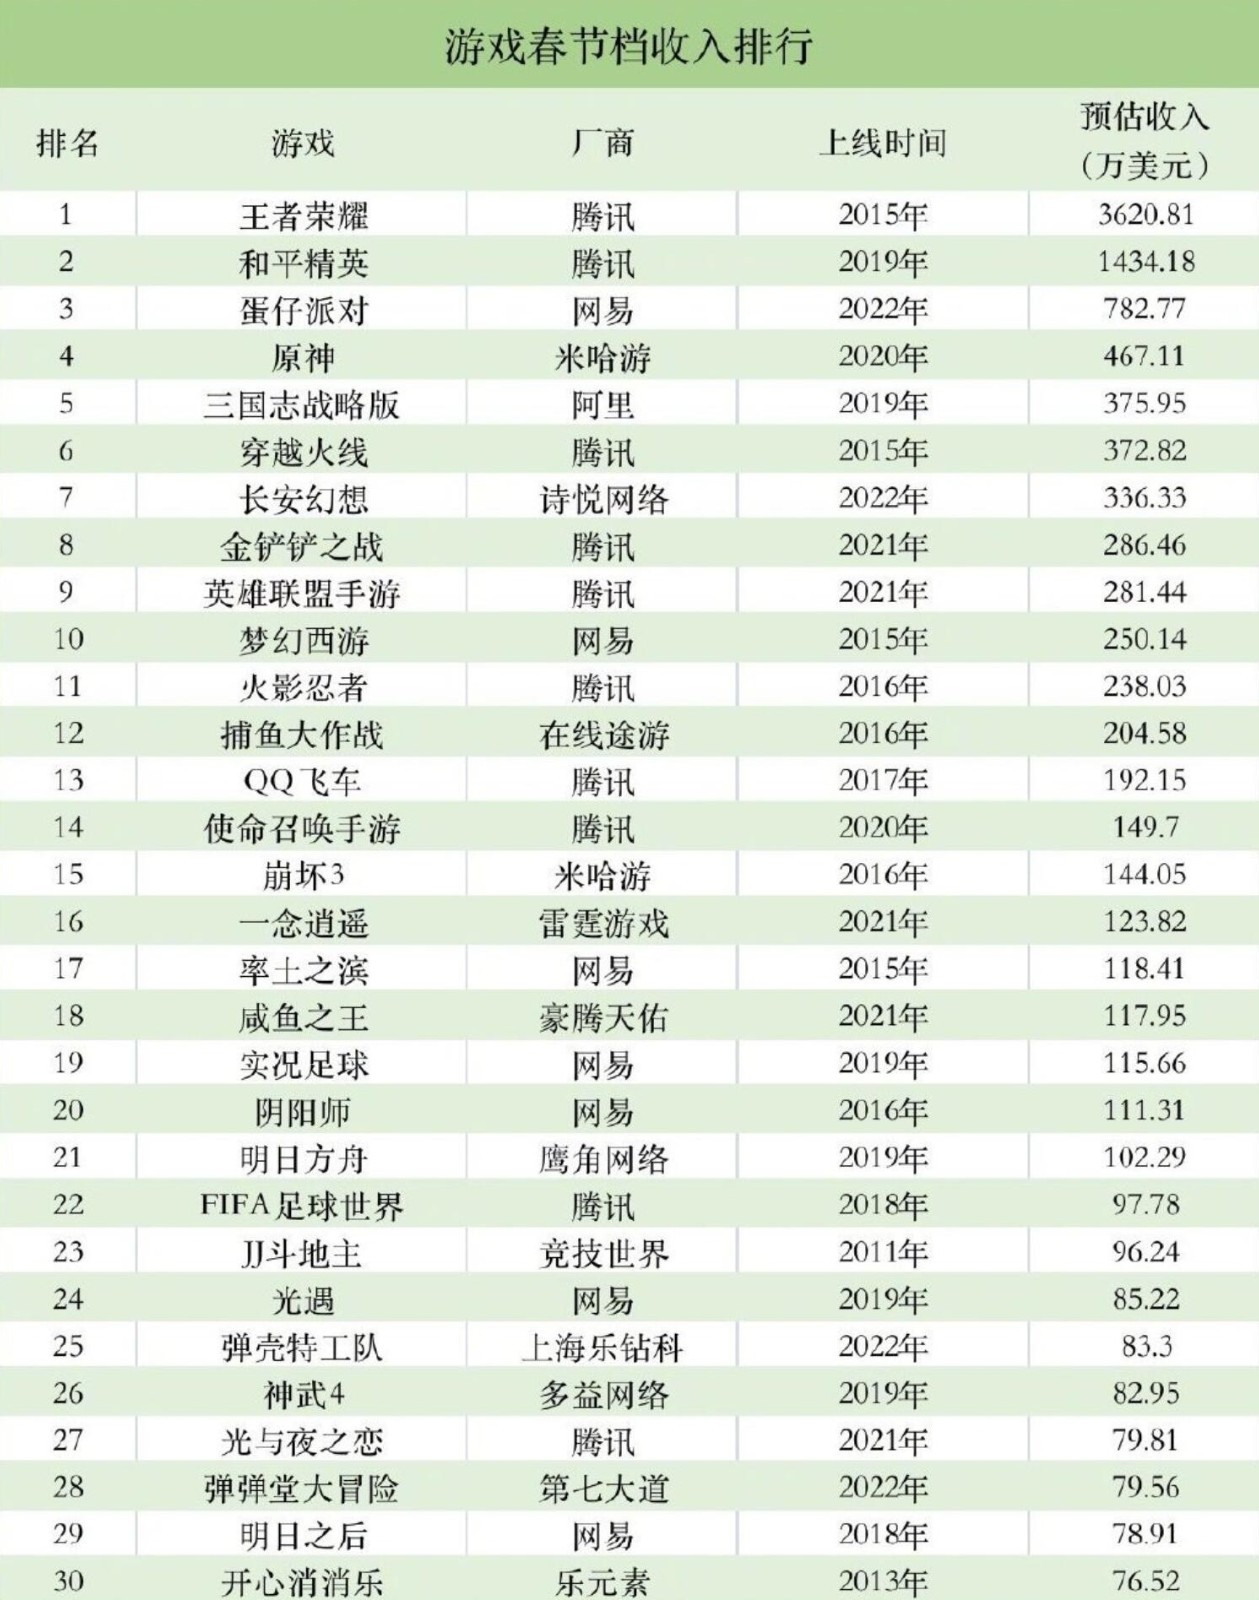 腾讯游戏春节吸金超4.5亿元：《王者荣耀》占一半